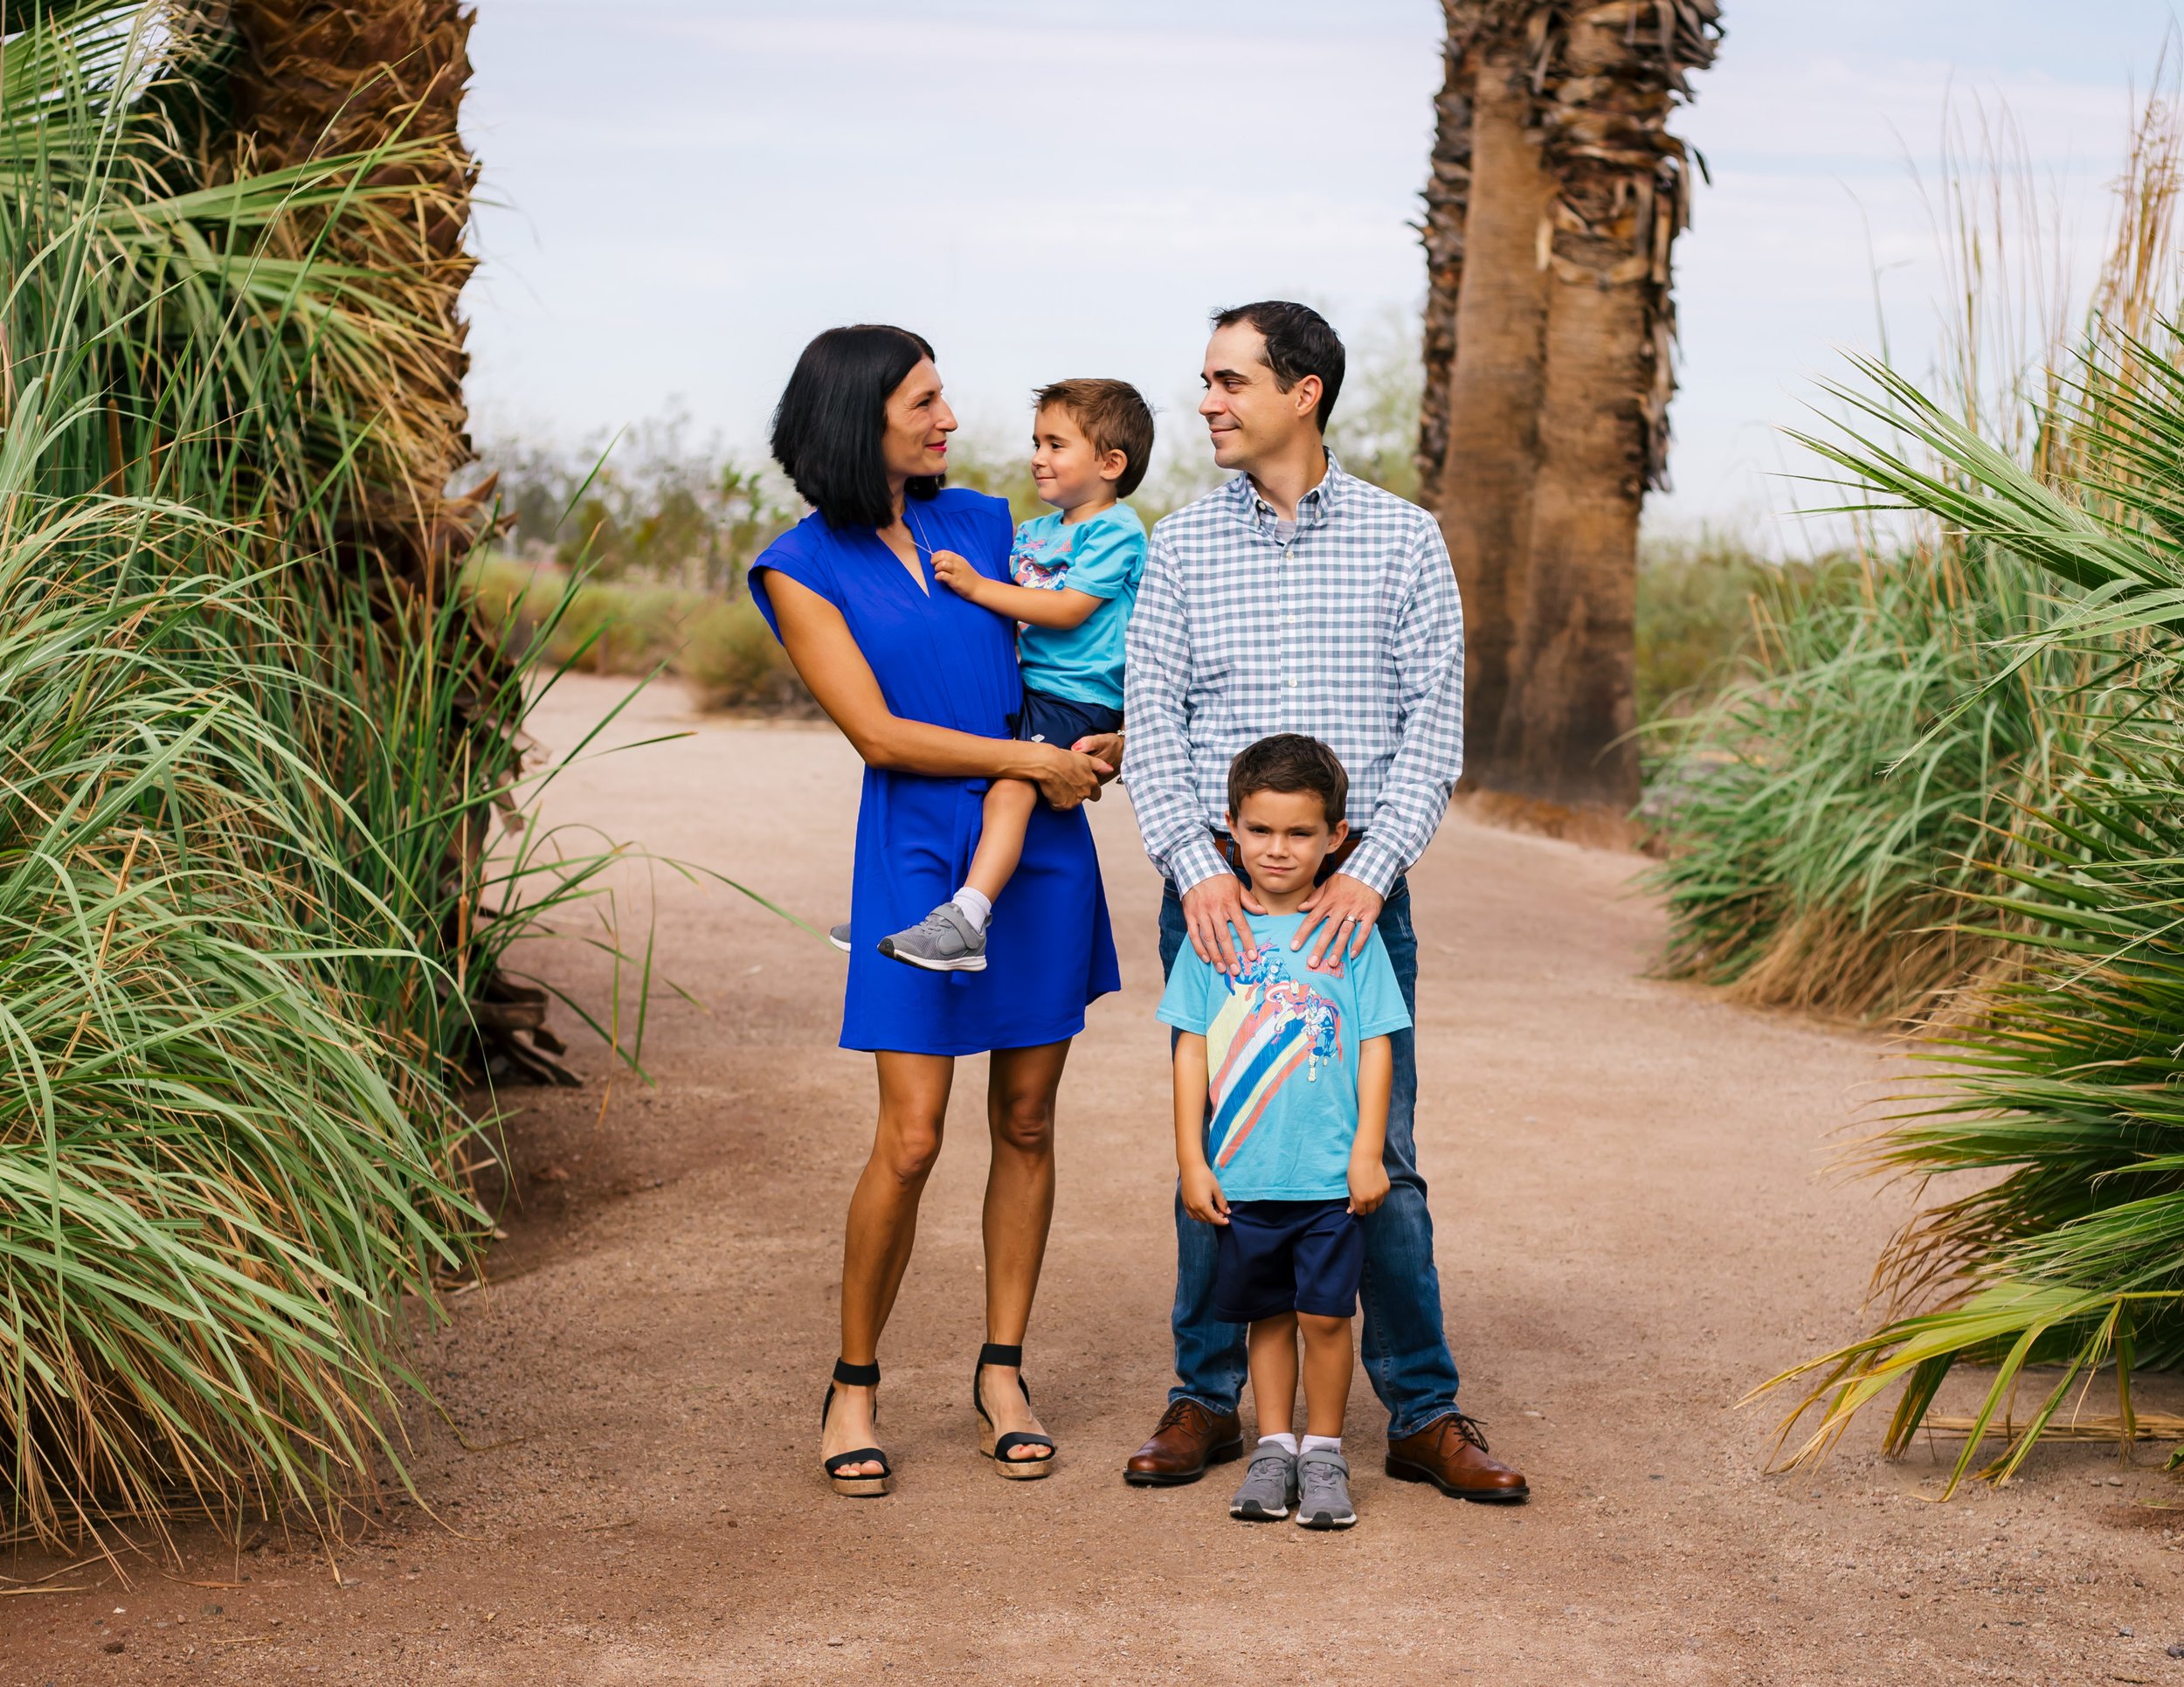 Summer Family Photoshoot at Papago Park - Phoenix Arizona